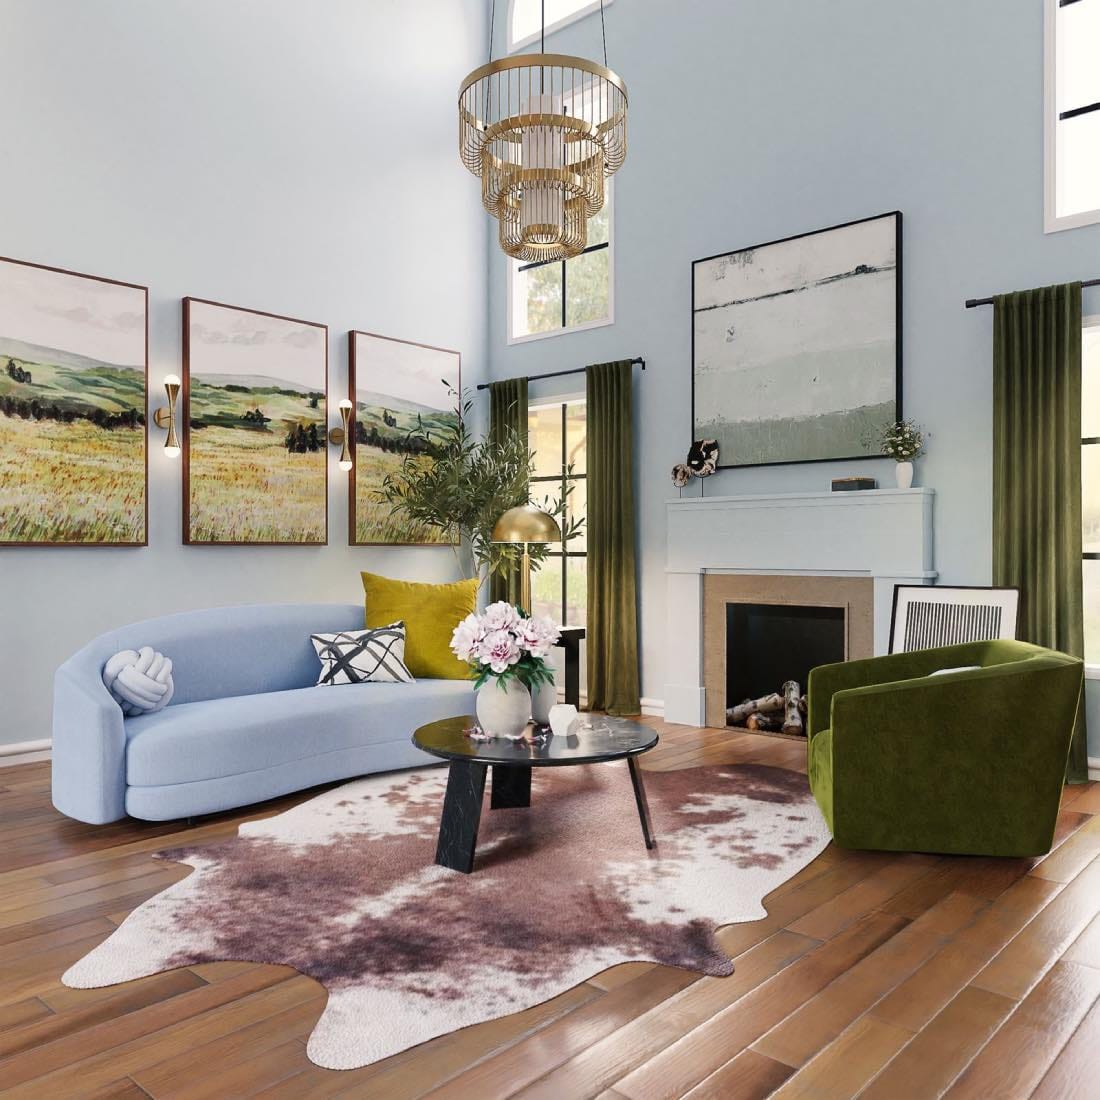 sala de estar maximalista de colores, alfombra animal, sofá azul